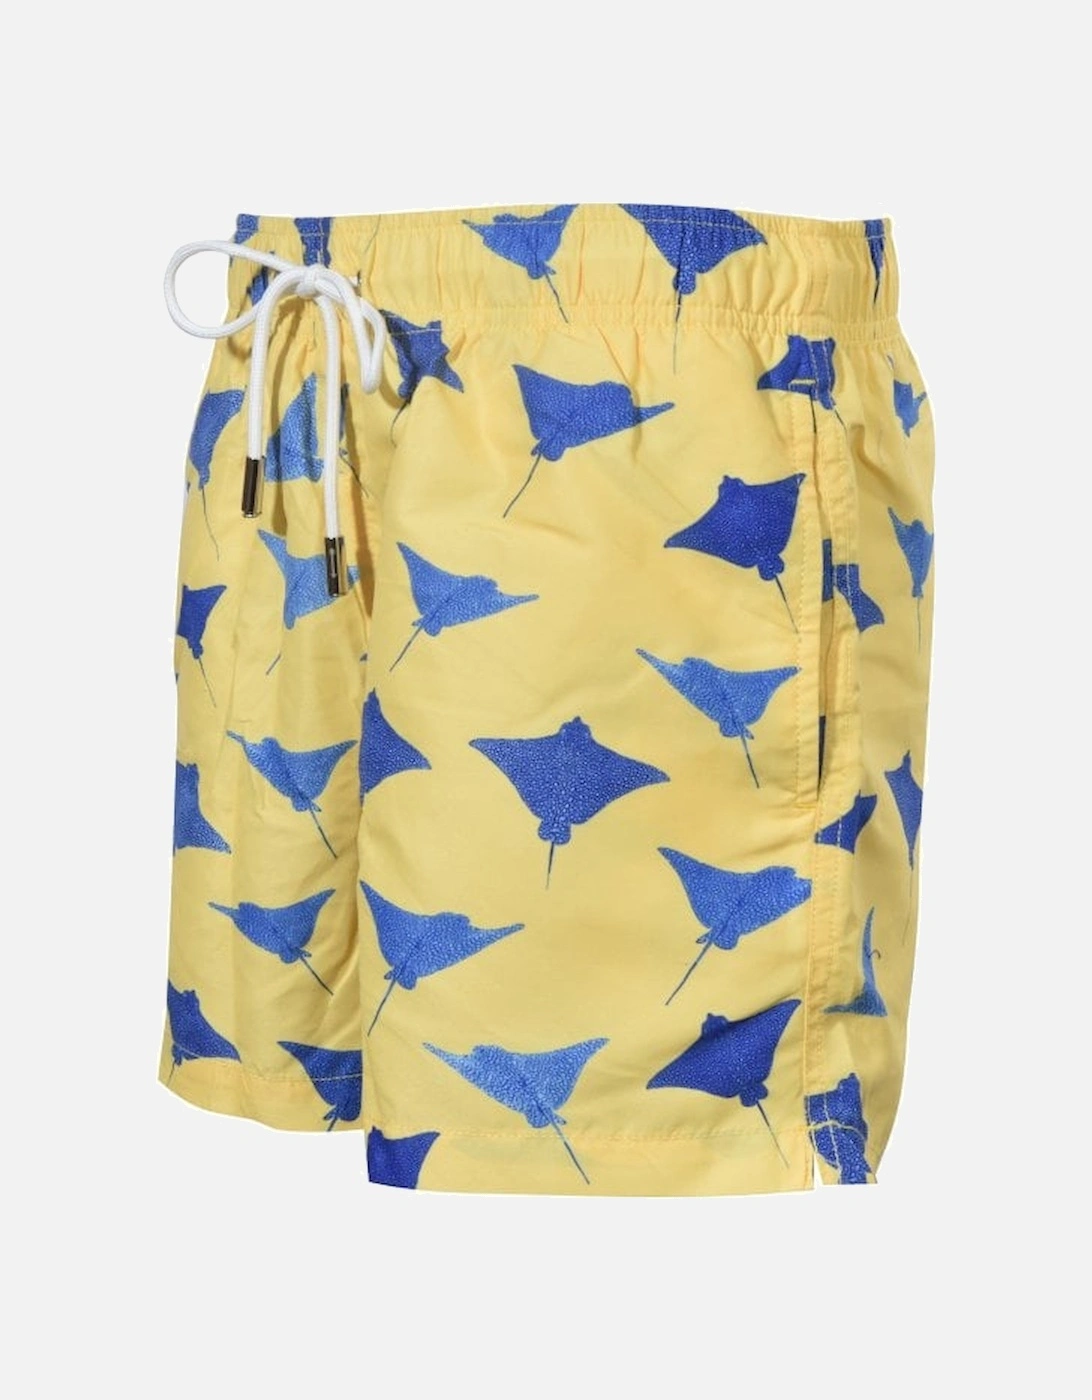 Swimming Rays Swim Shorts, Sun Yellow w/navy